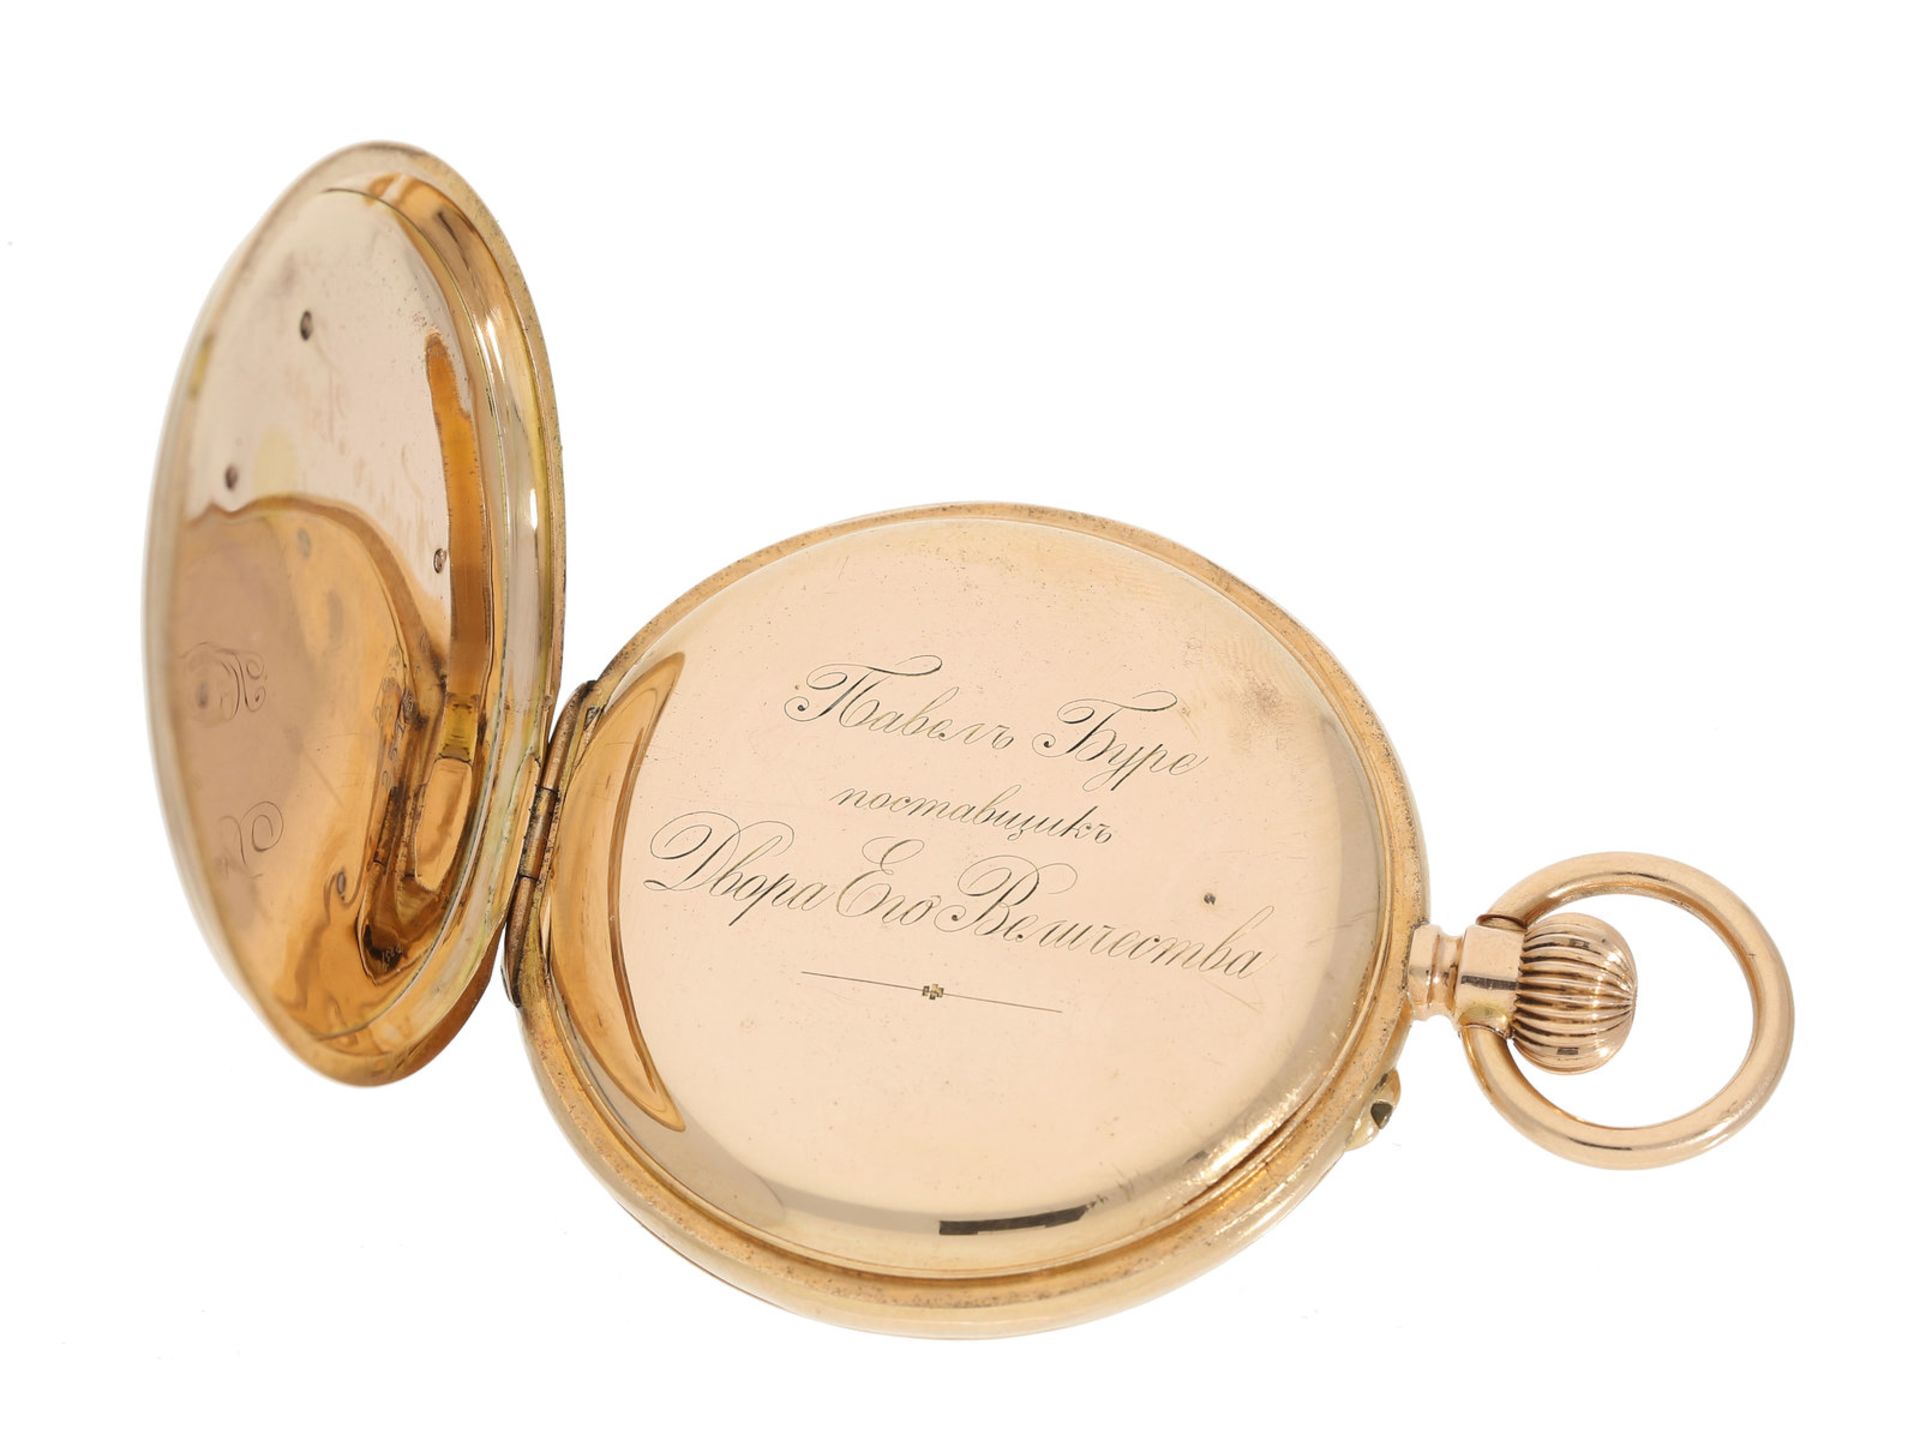 Taschenuhr: außergewöhnliche Gold/Emaille-Taschenuhr mit rückseitigem Zaren-Adler und Zodiak- - Bild 3 aus 4